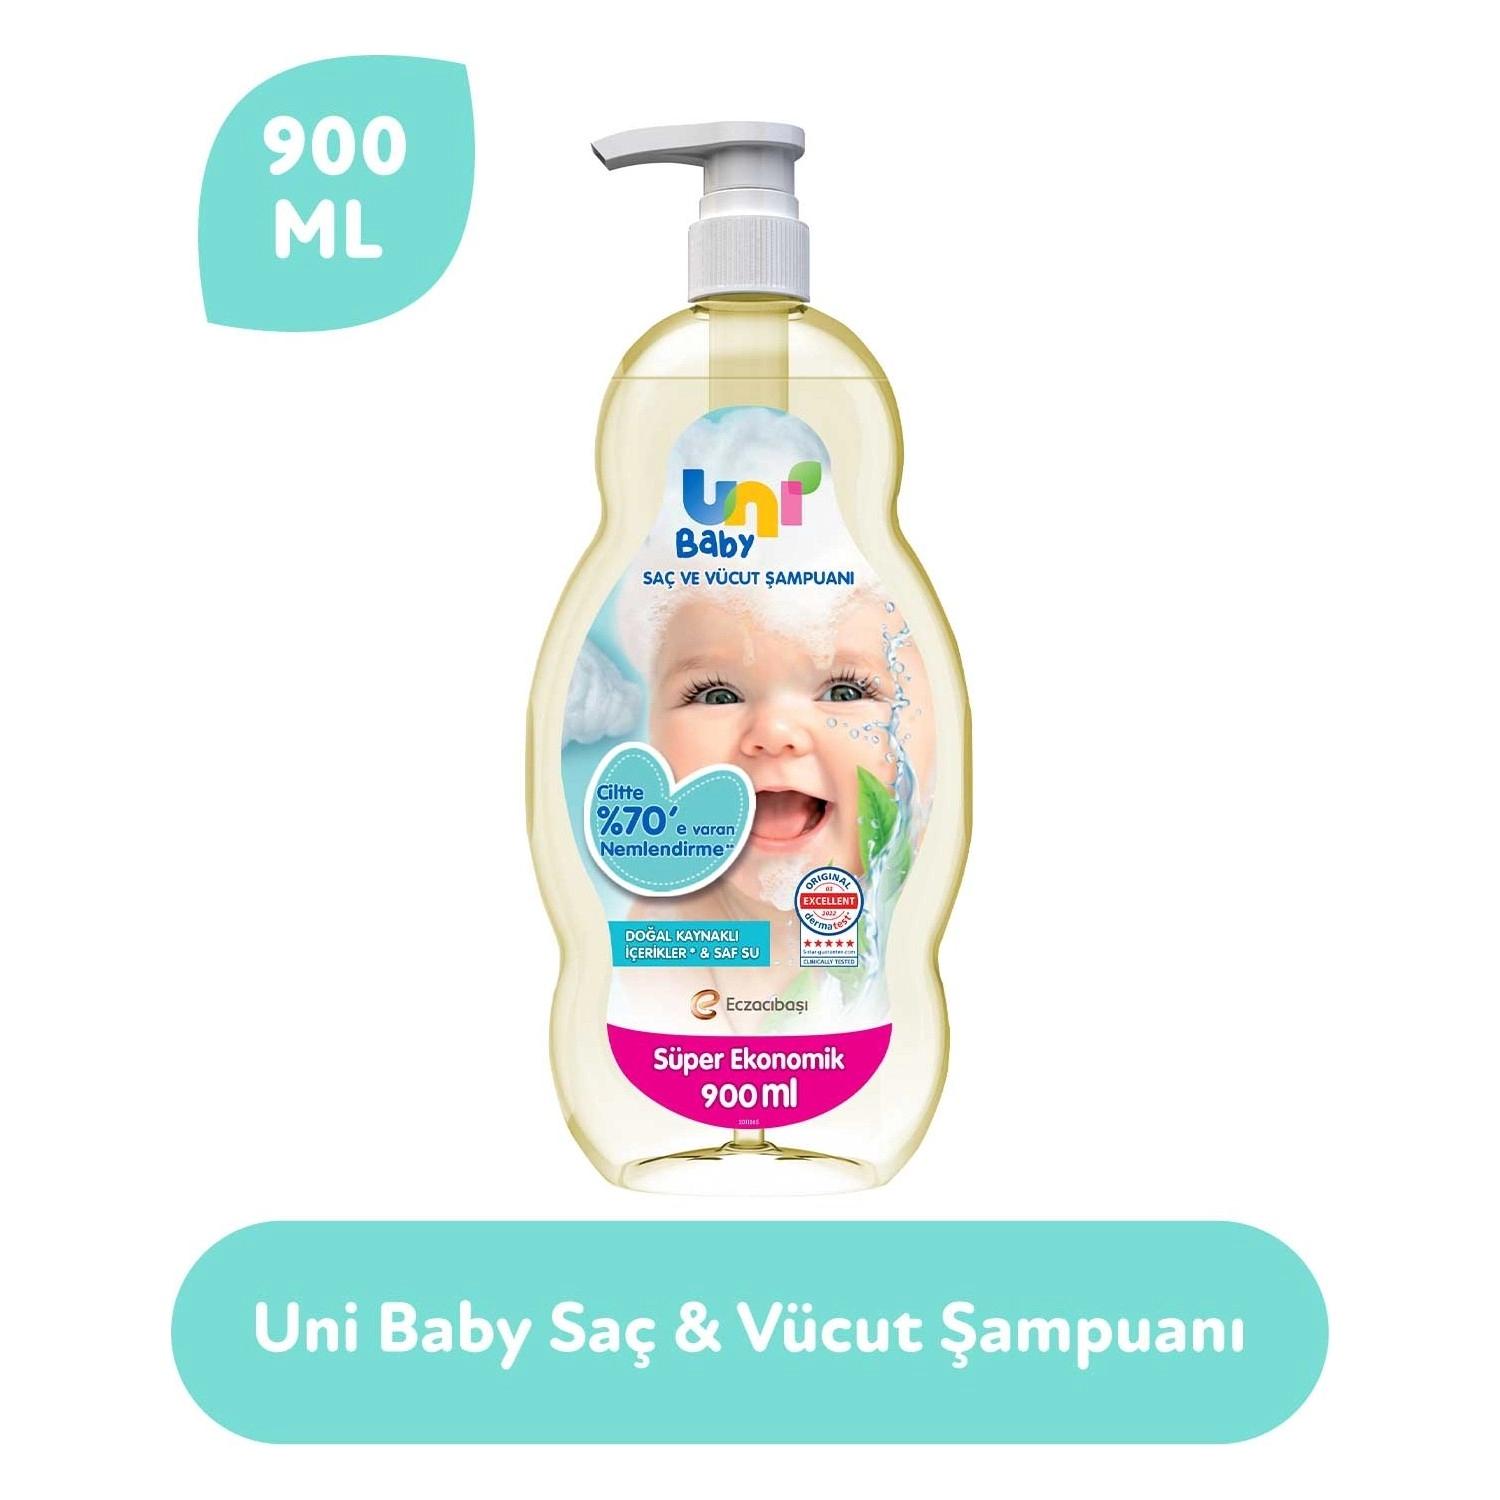 Uni Baby Saç ve Vücut Şampuan 900 ml